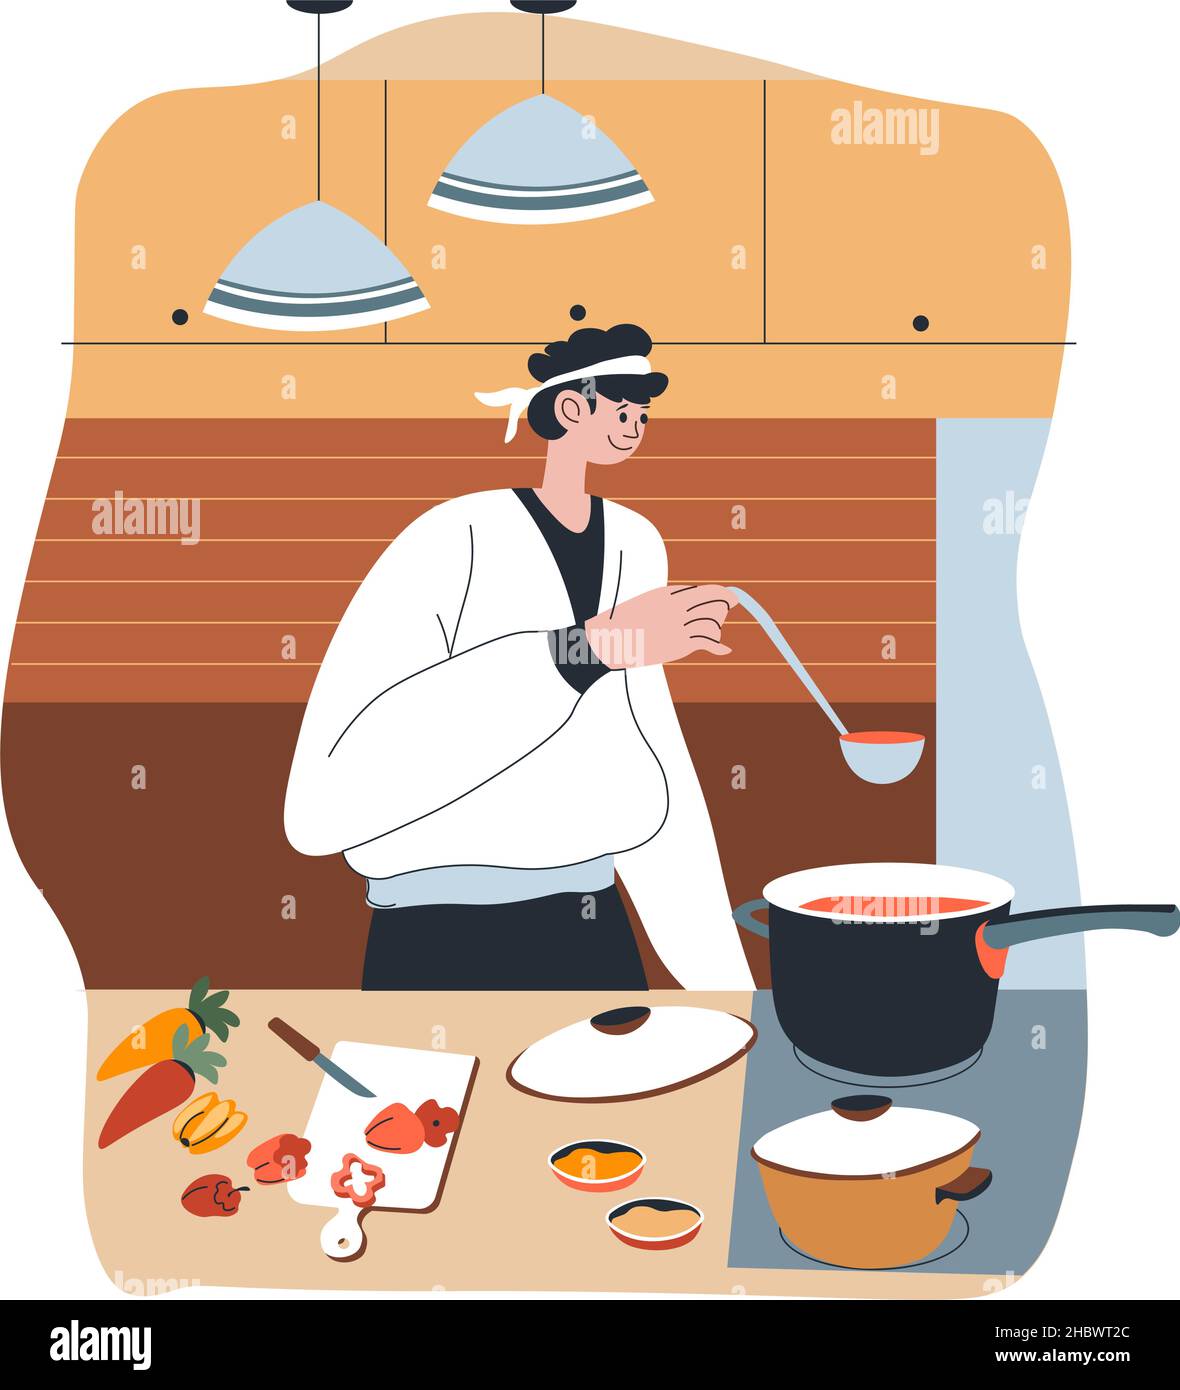 Chef cuisinier professionnel et compétent cuisant des plats dans la cuisine, personnage féminin avec des ingrédients pour faire bouillir le repas et préparer les commandes.Dame en uniforme mak Illustration de Vecteur